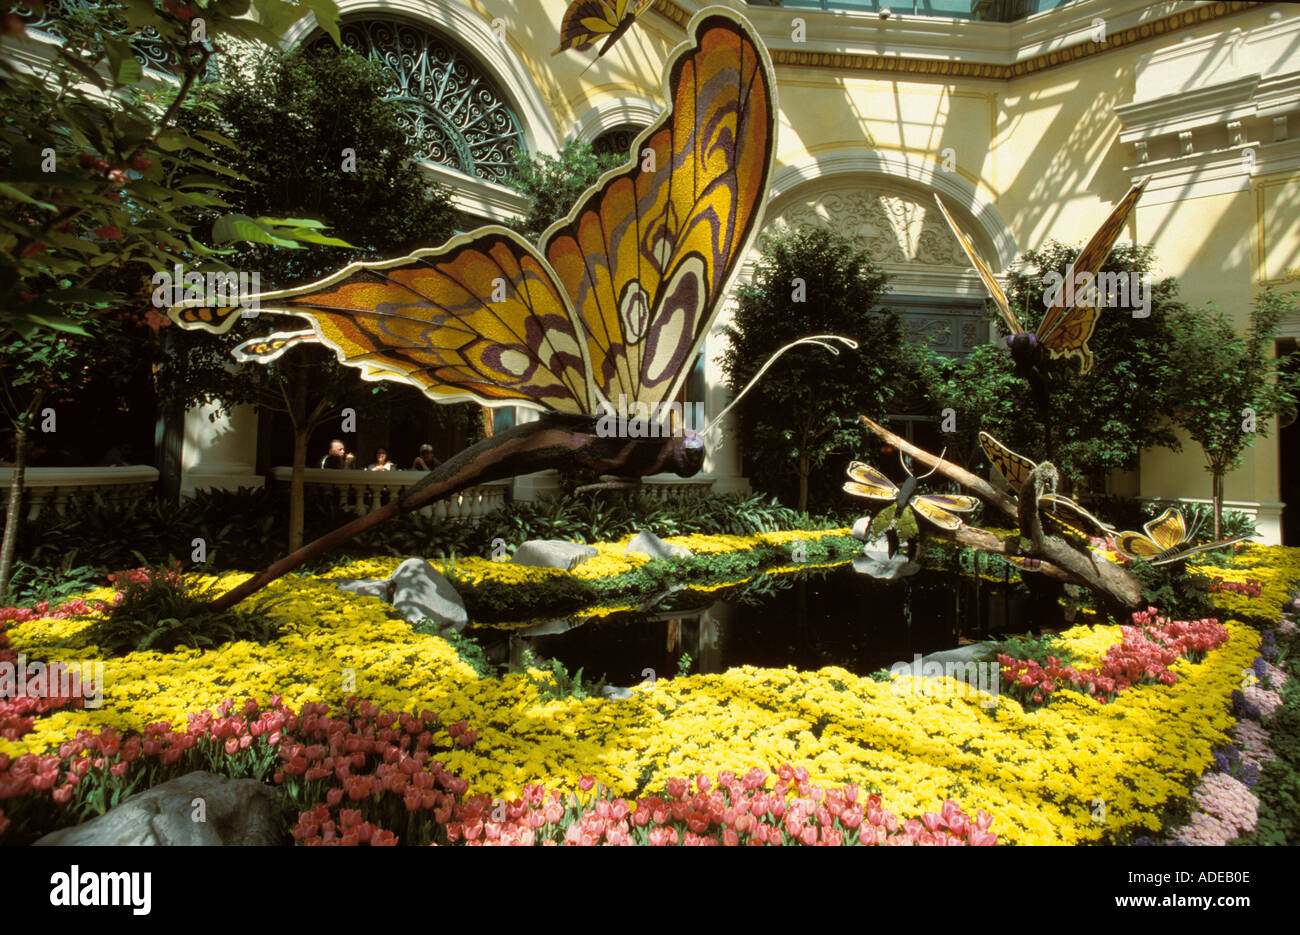 Butterfly Garden in Las Vegas, NV